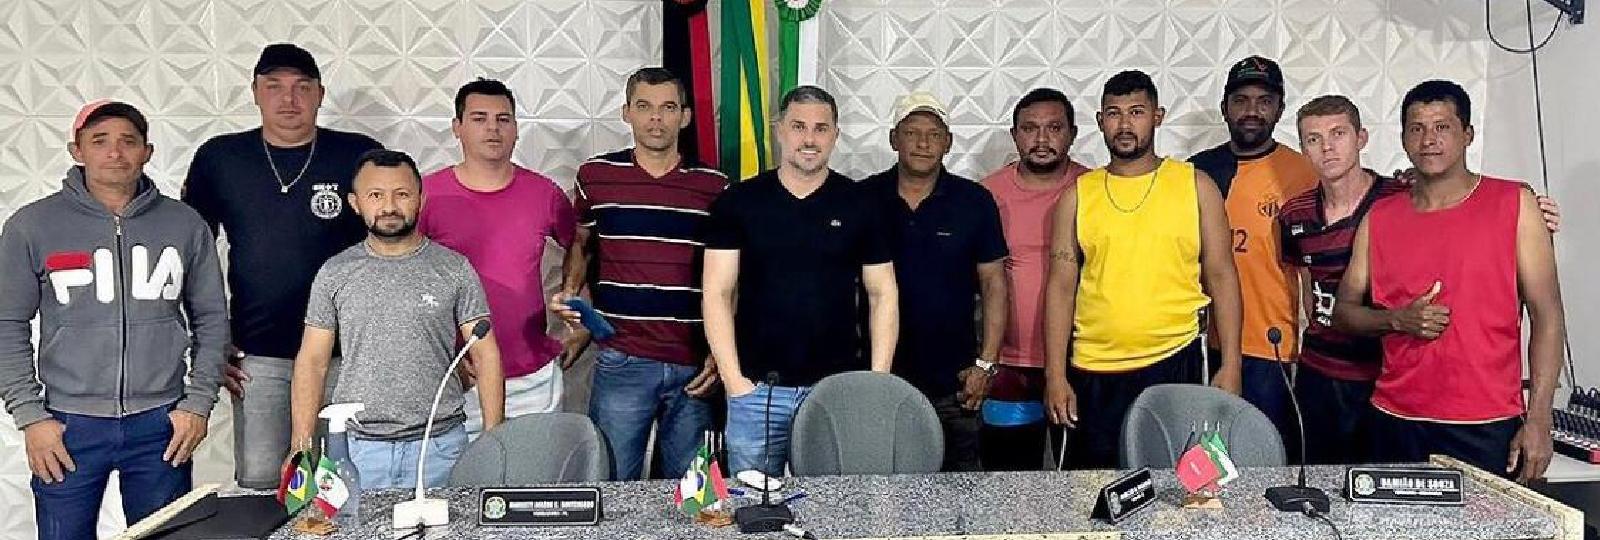 A Prefeitura Municipal de São José dos Cordeiros anuncia fazer um grande campeonato de futsal, organizado pela gestão, através do Departamento de Esportes.